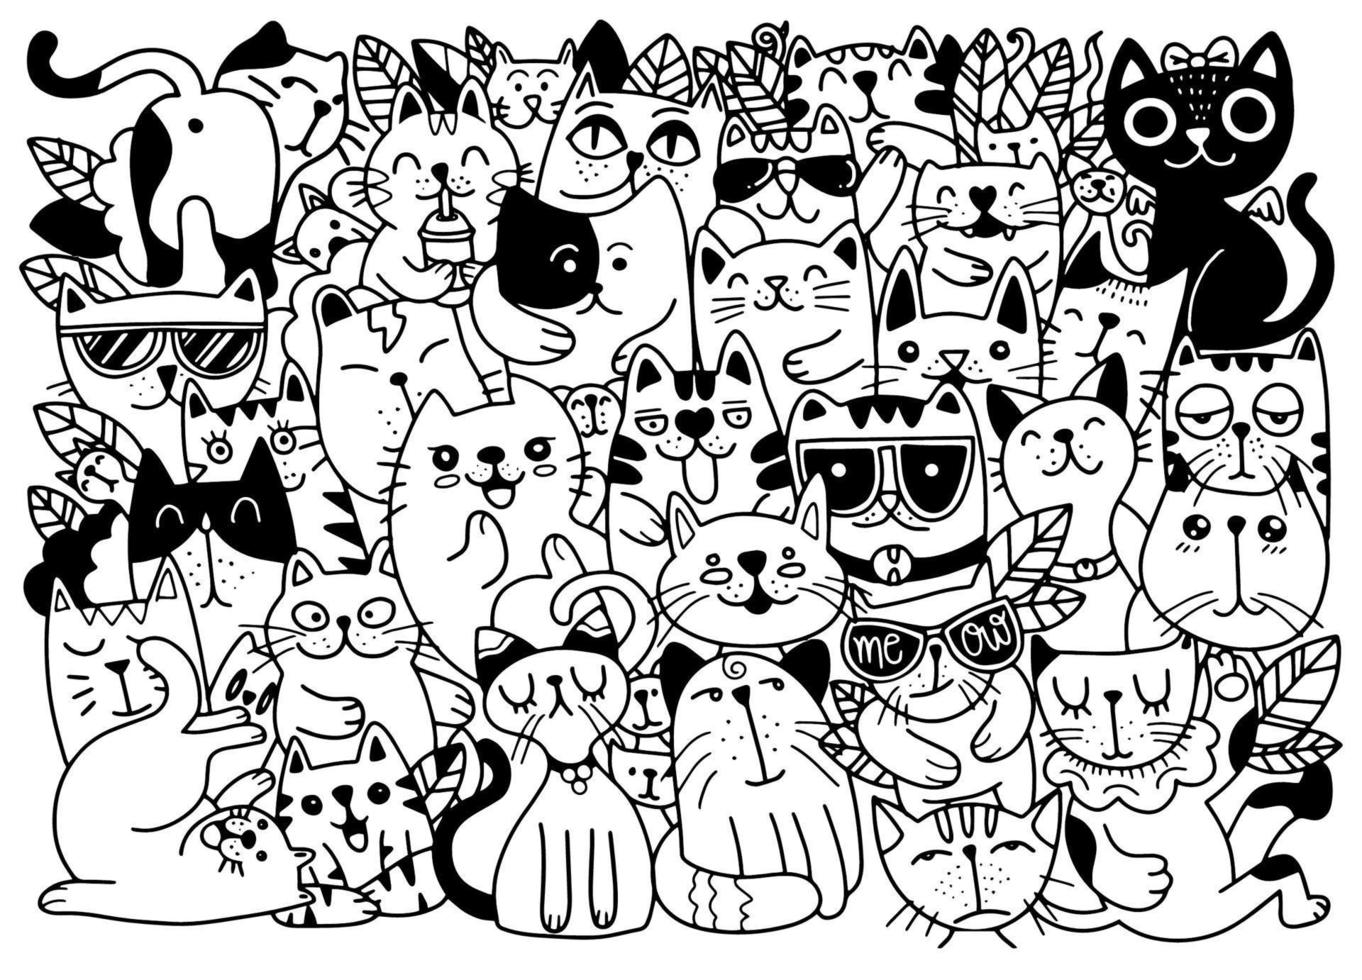 illustrations vectorielles dessinées à la main de personnages de chats. style de croquis. griffonnage vecteur